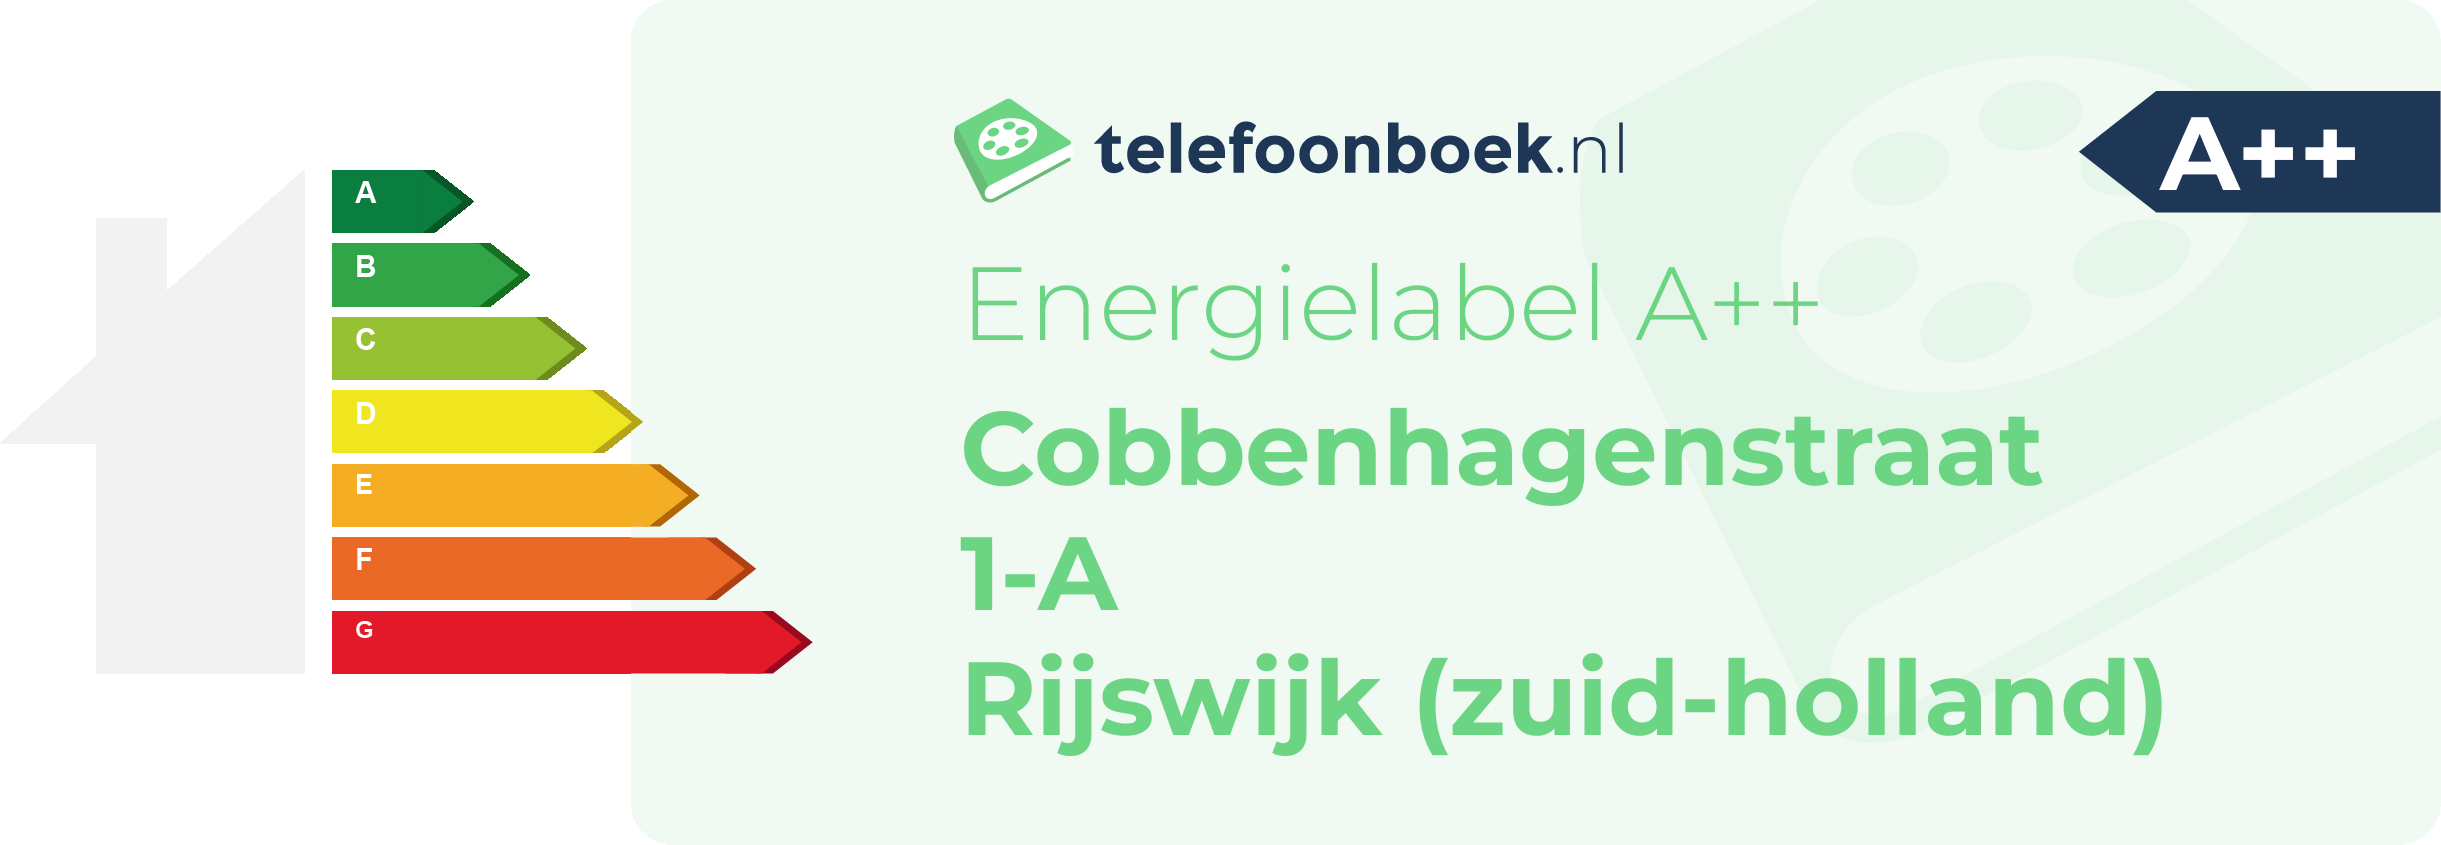 Energielabel Cobbenhagenstraat 1-A Rijswijk (Zuid-Holland)